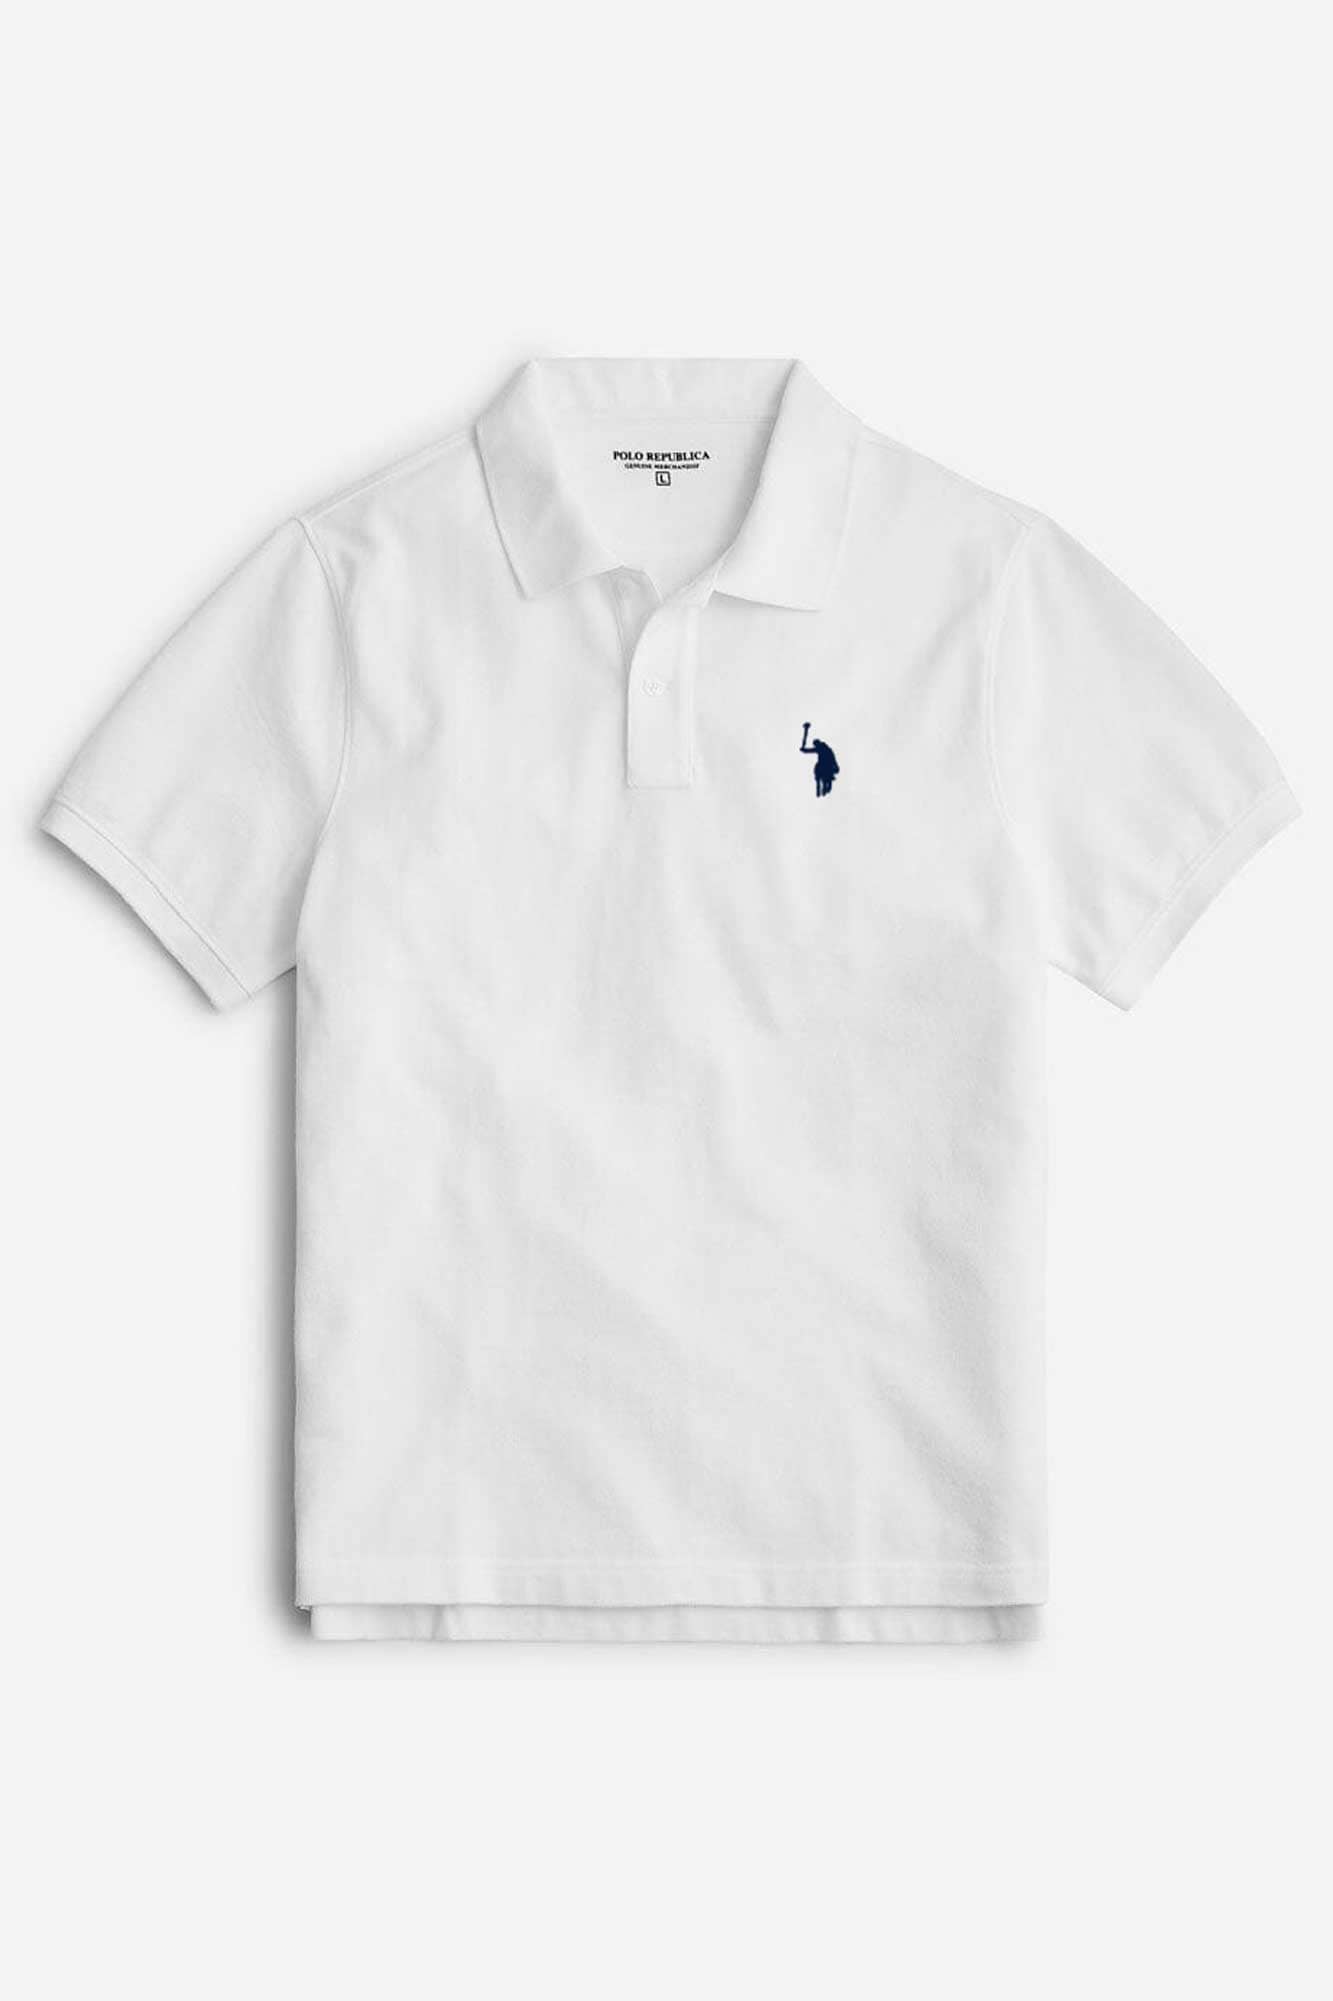 Polo Republica Men's Signature Pony Embroidered Short Sleeve Polo Shirt Men's Polo Shirt Polo Republica White S 